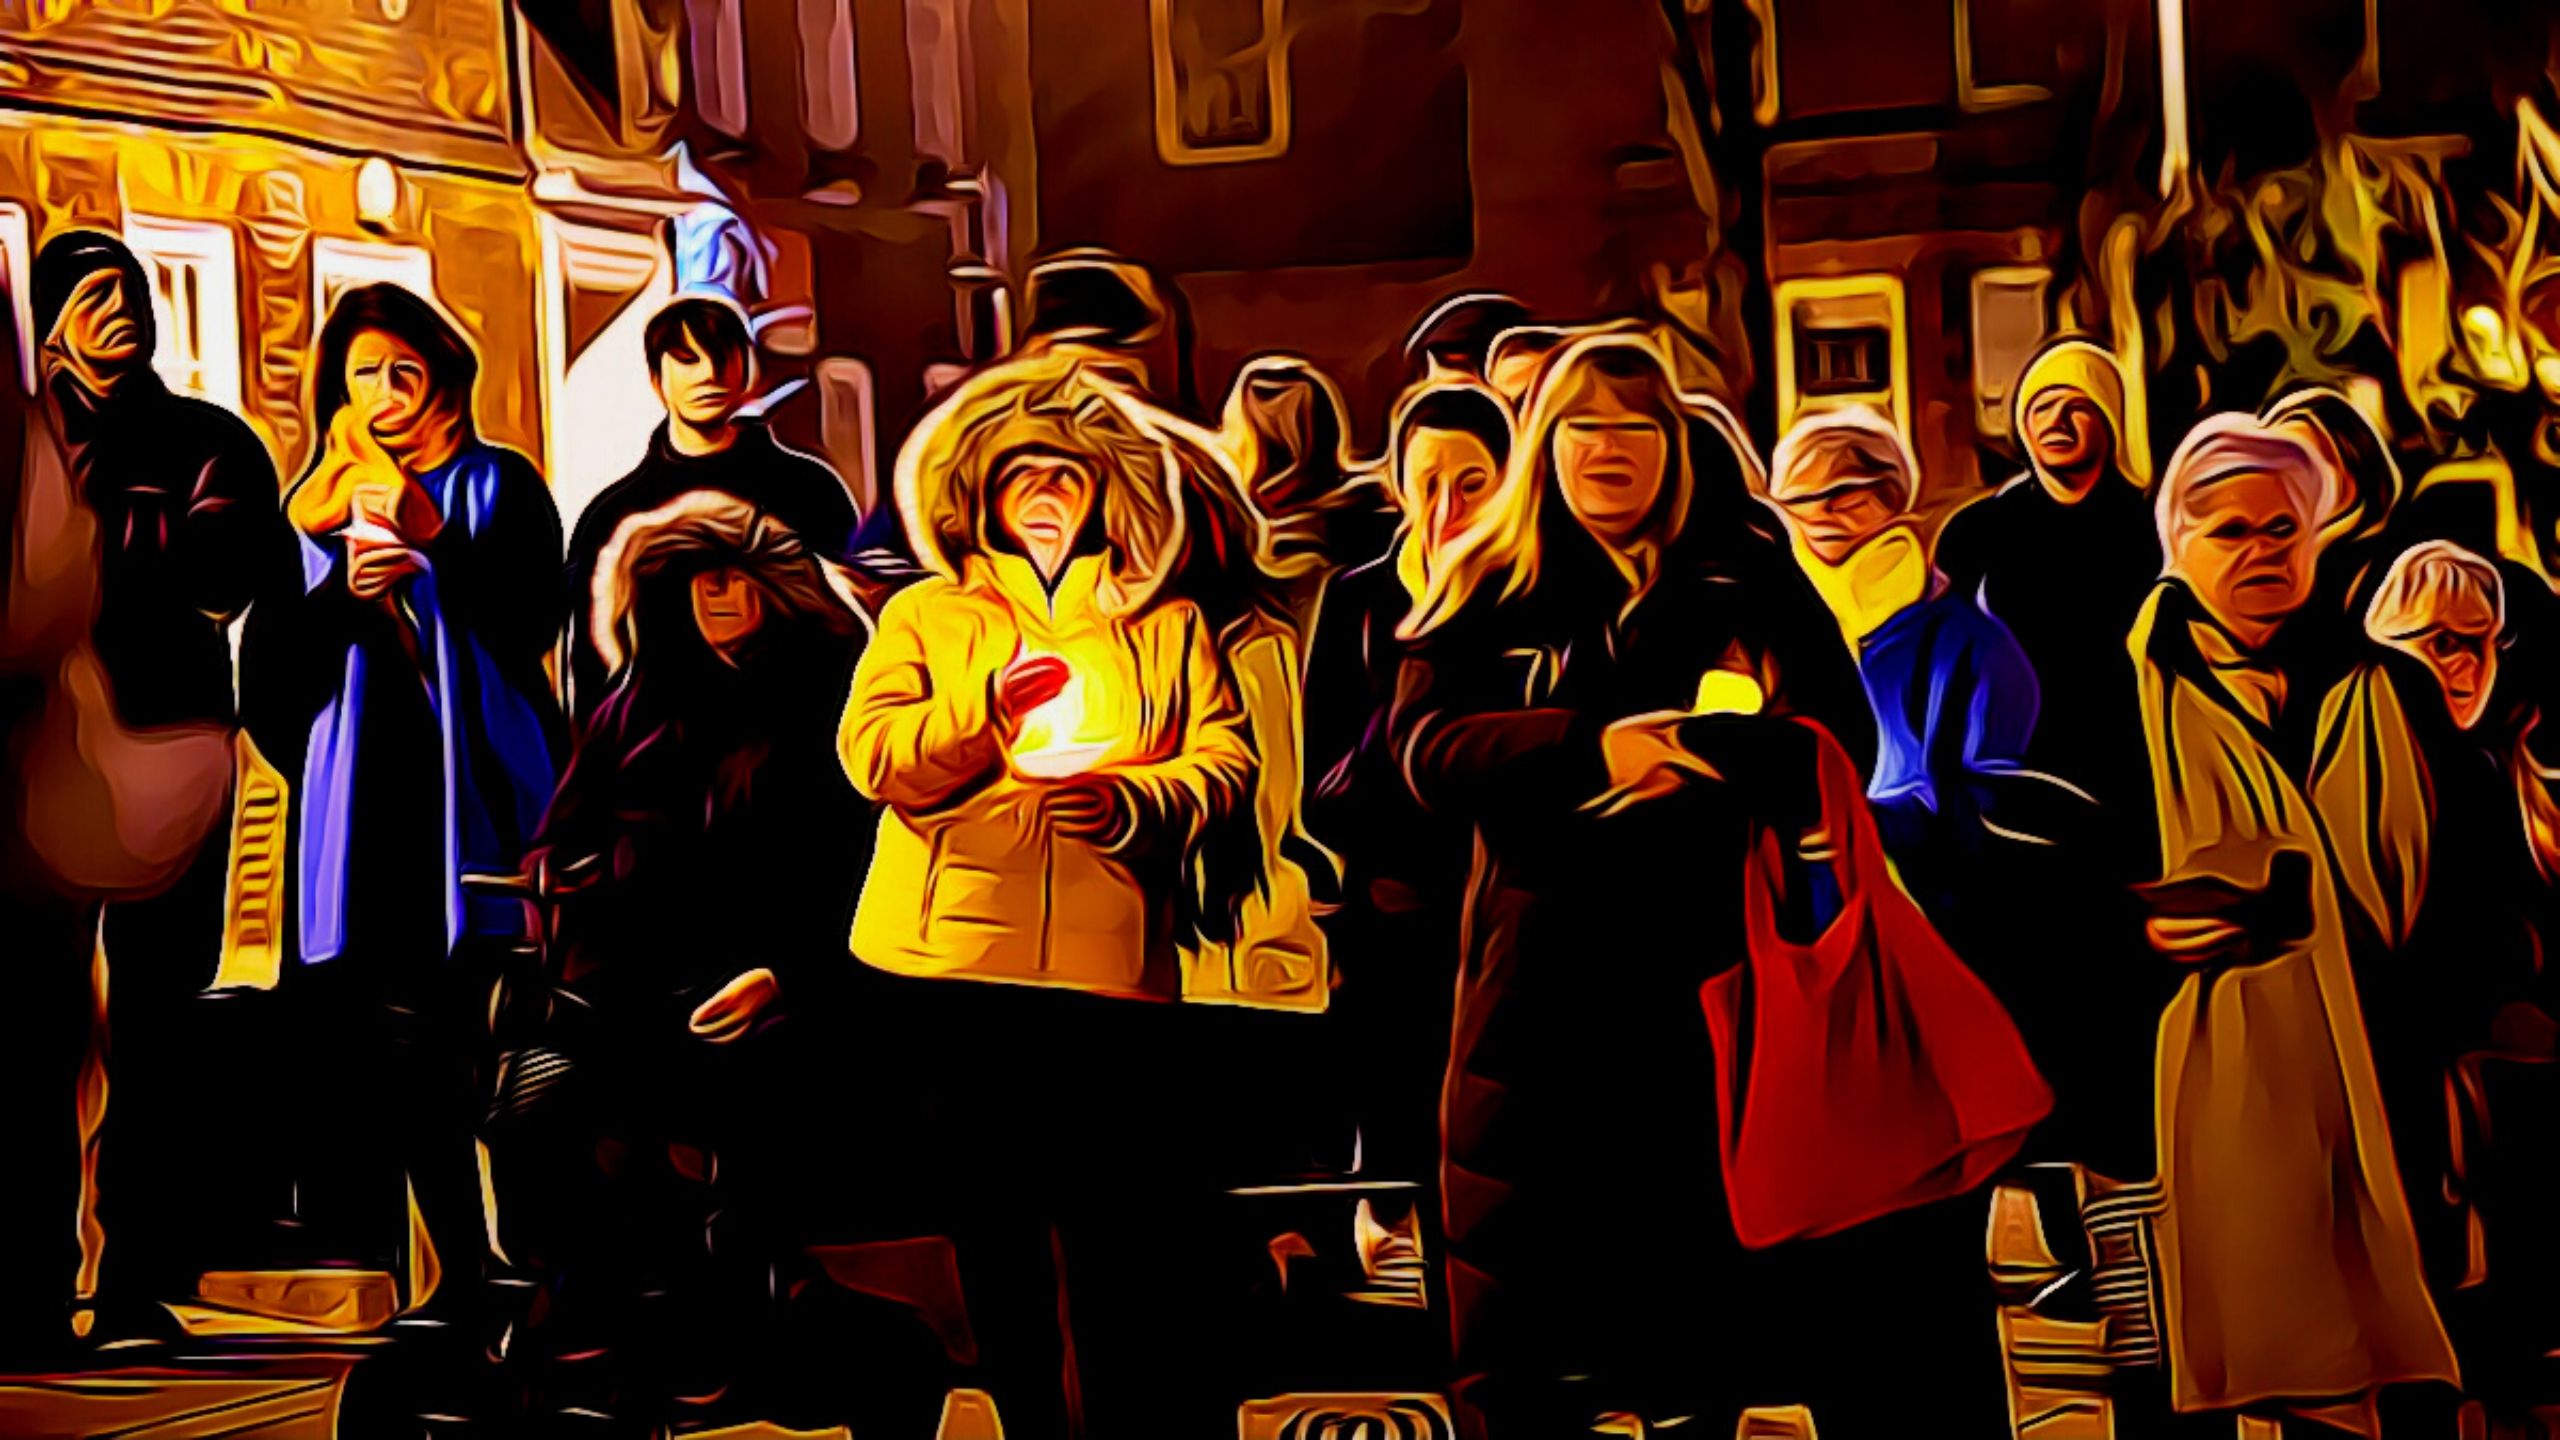 ukraine night vigil